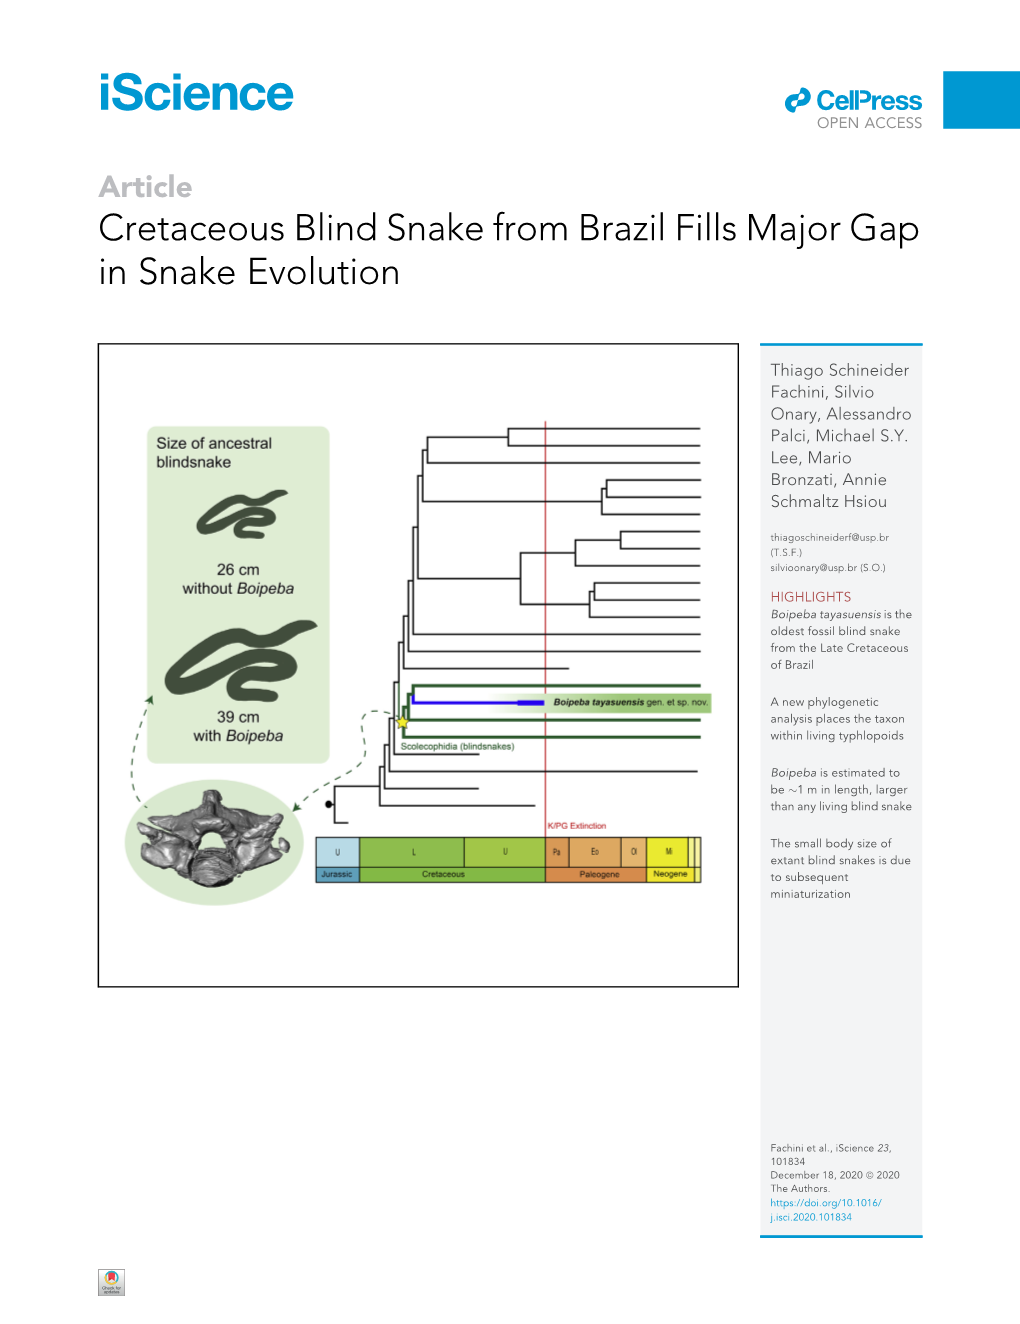 Cretaceous Blind Snake from Brazil Fills Major Gap in Snake Evolution